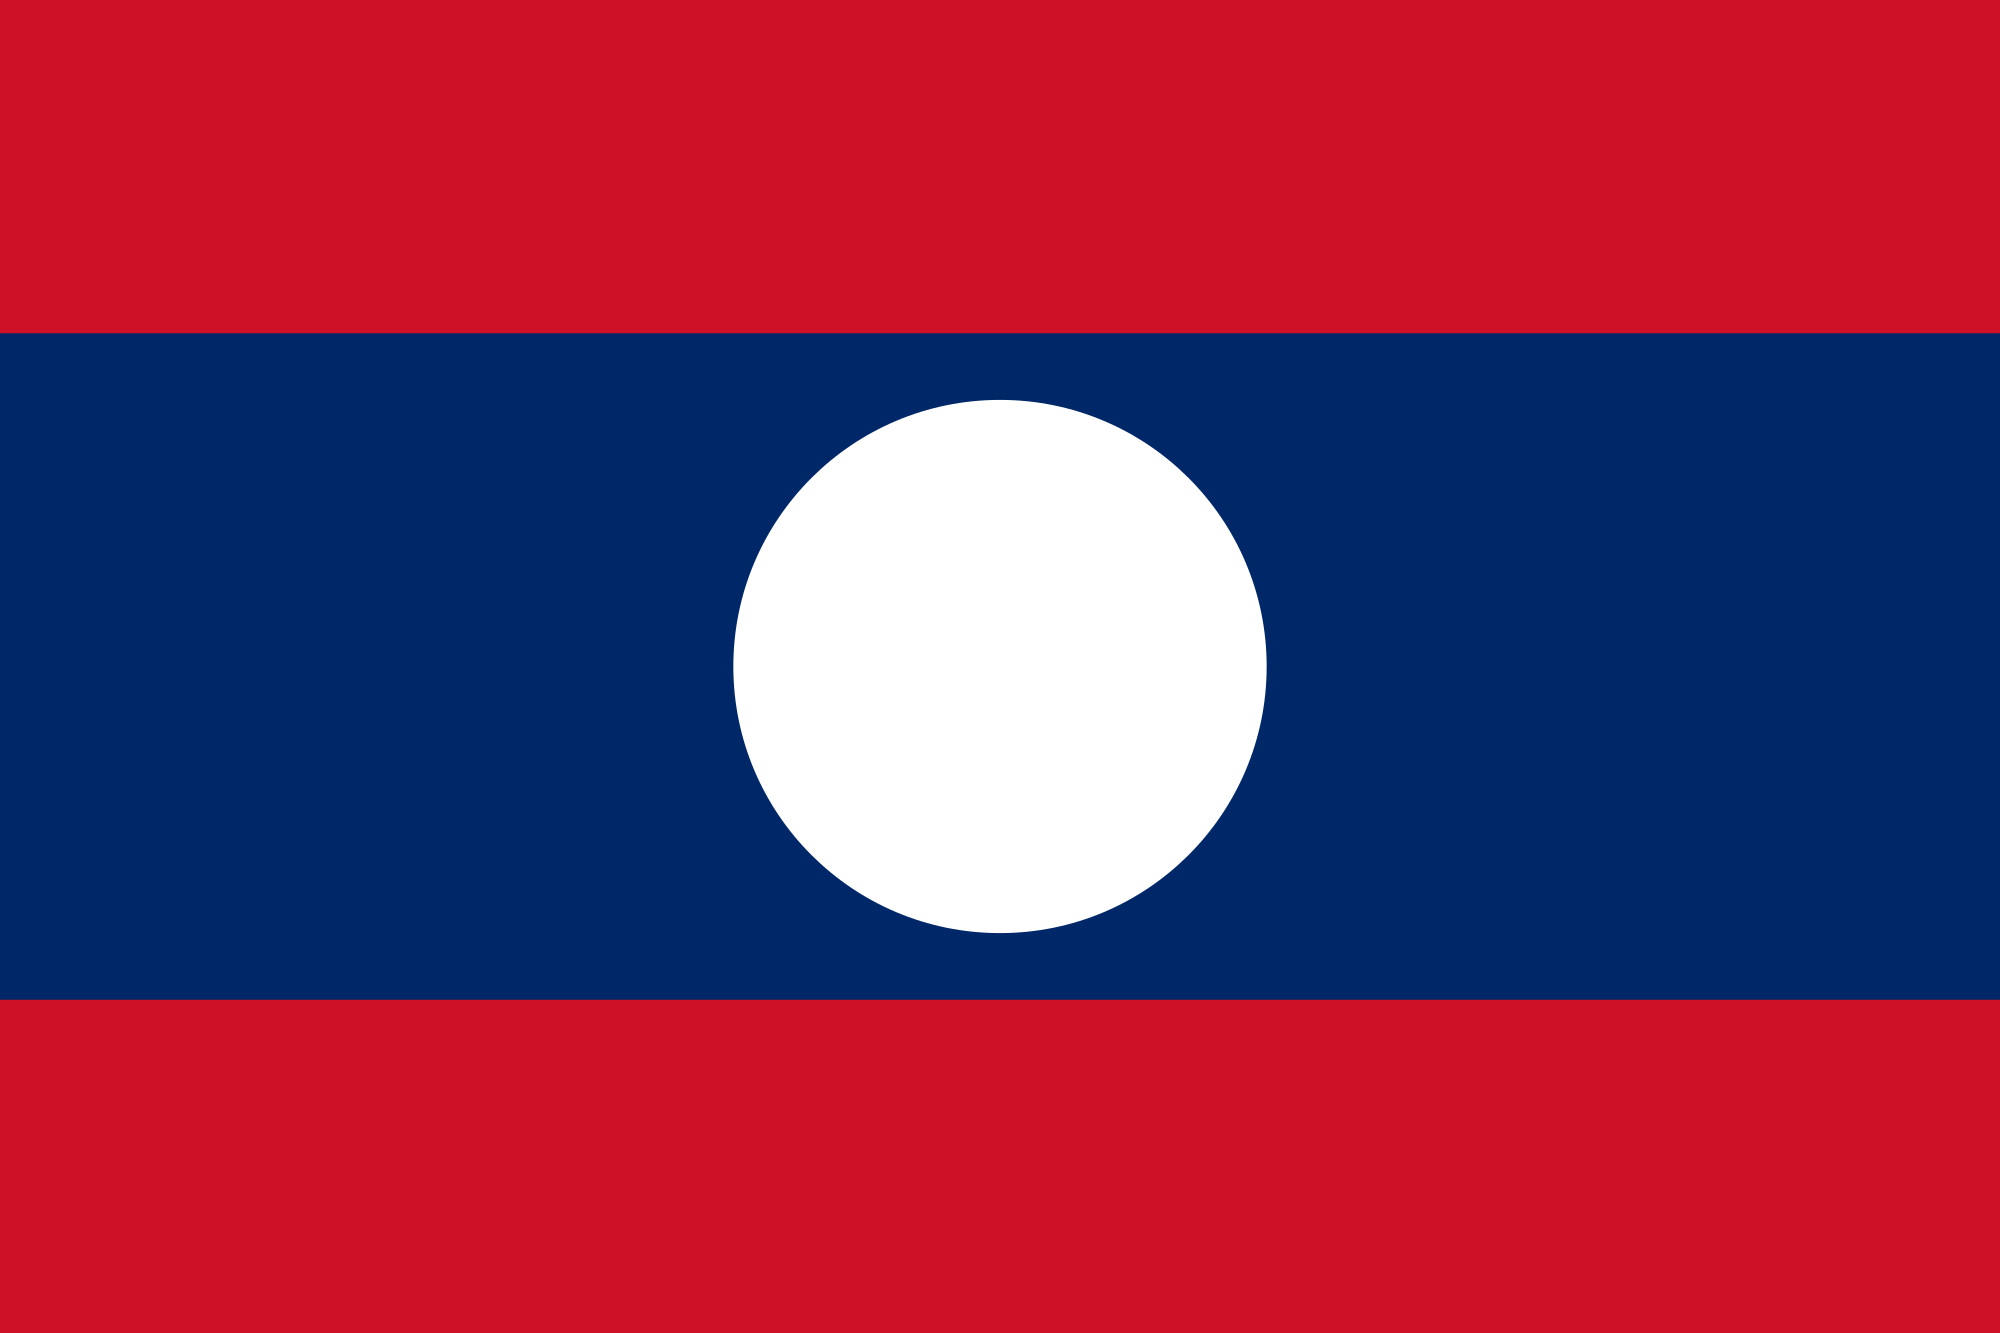 Laos_flag